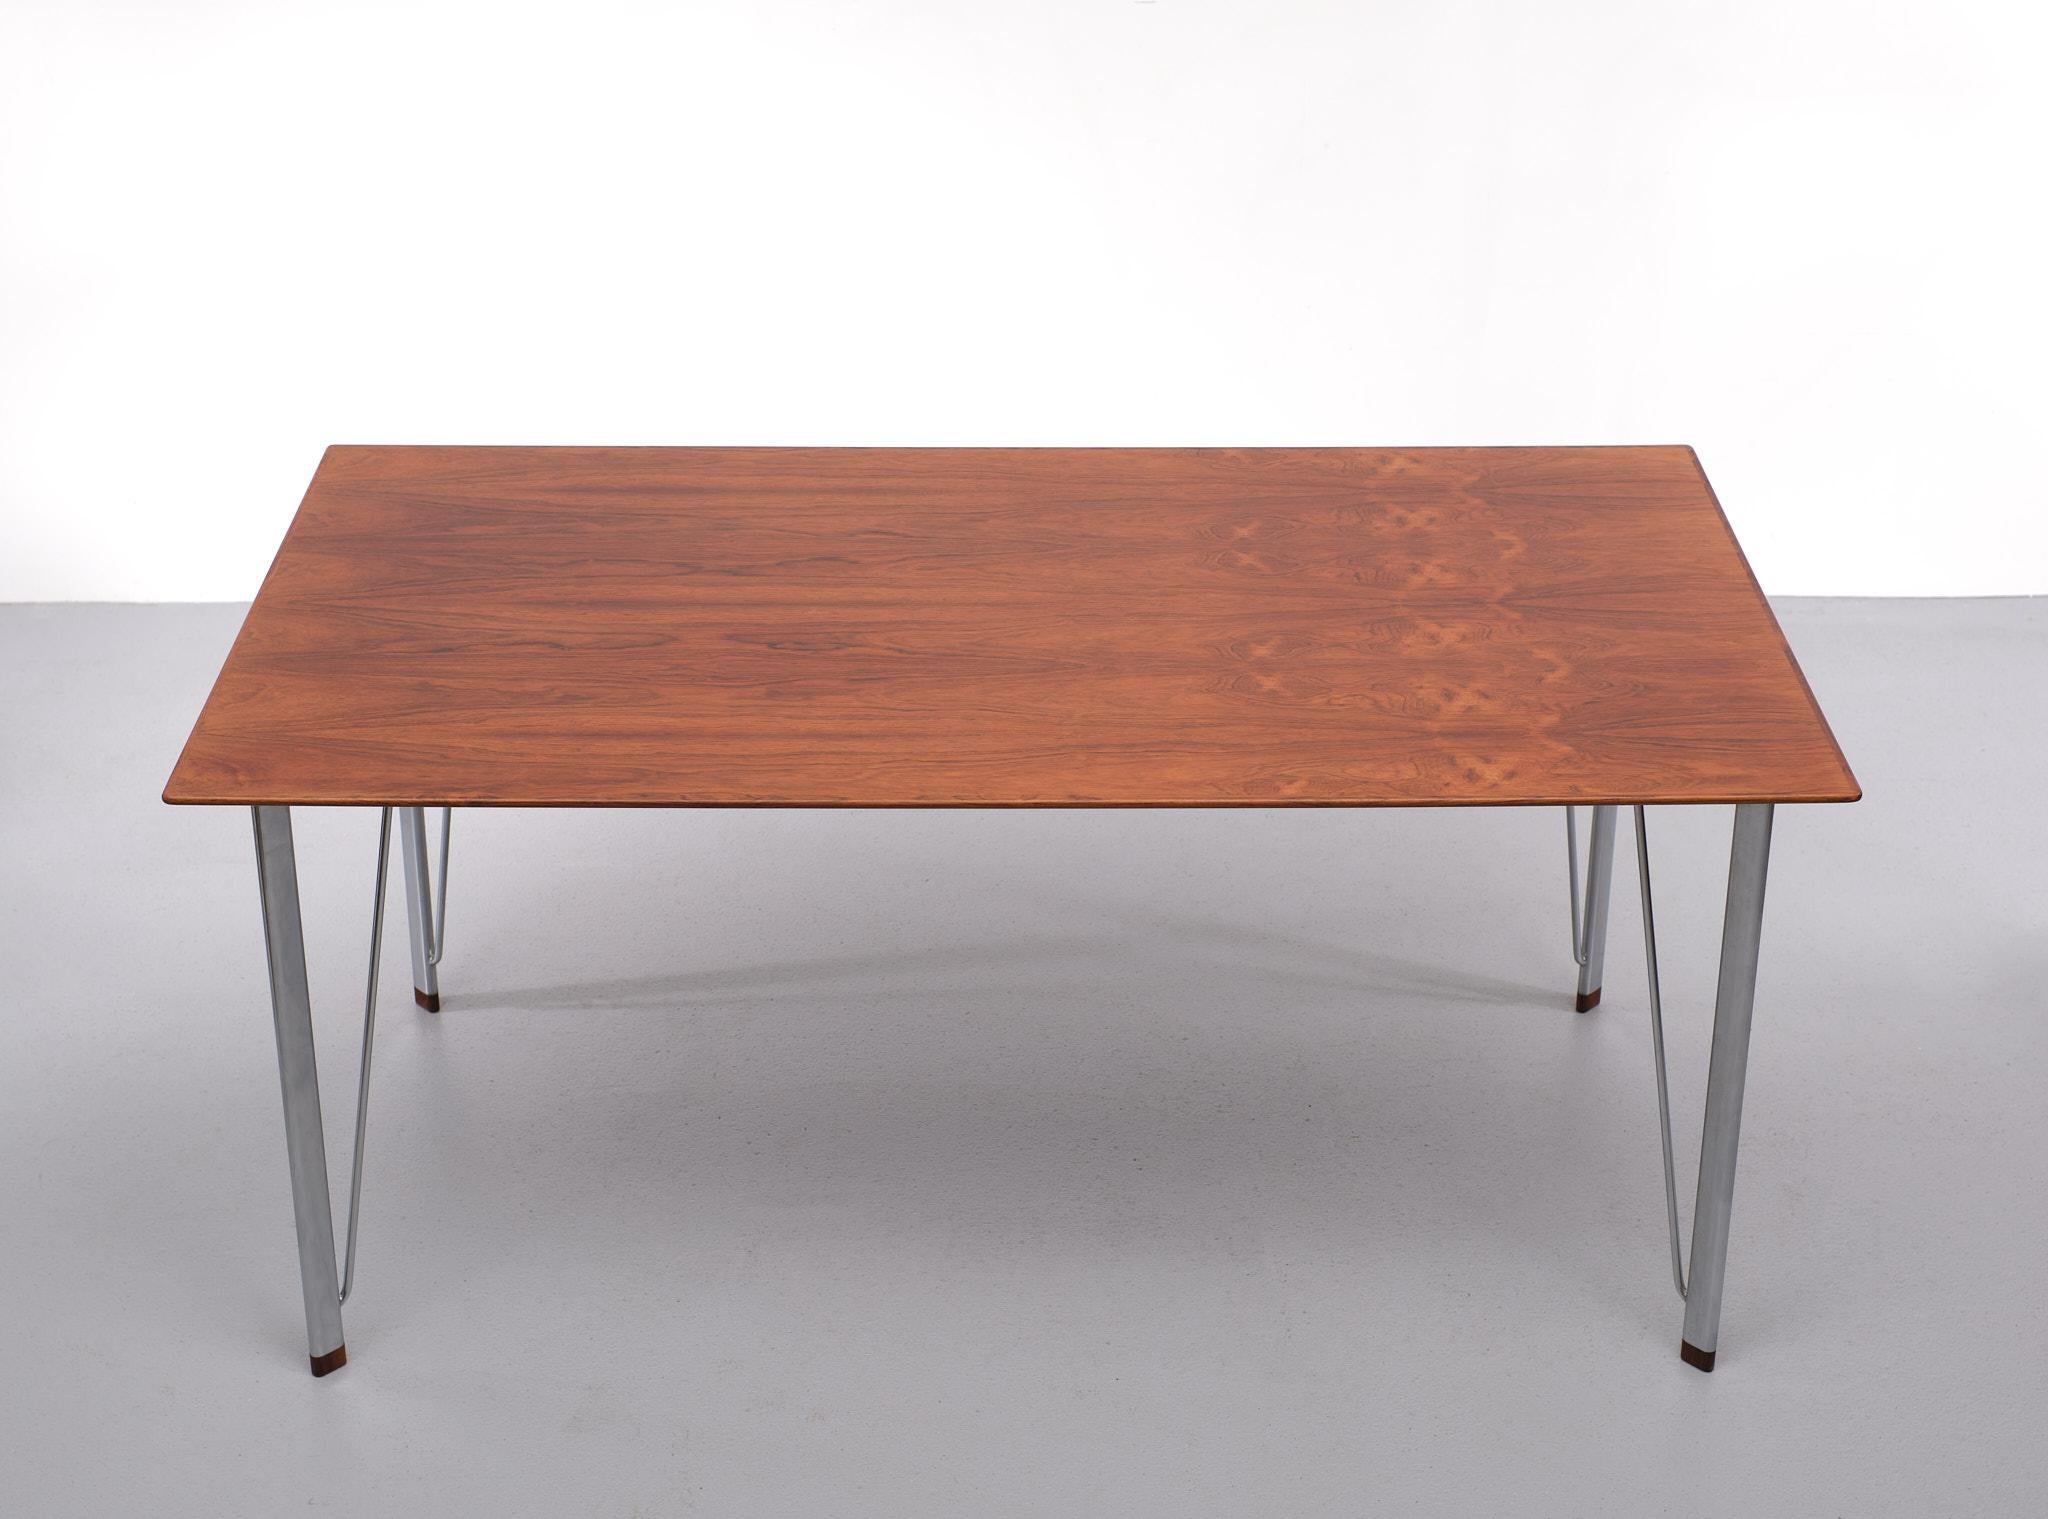 Arne Jacobsen Rosewood  writing  table  1950s  Denmark  4